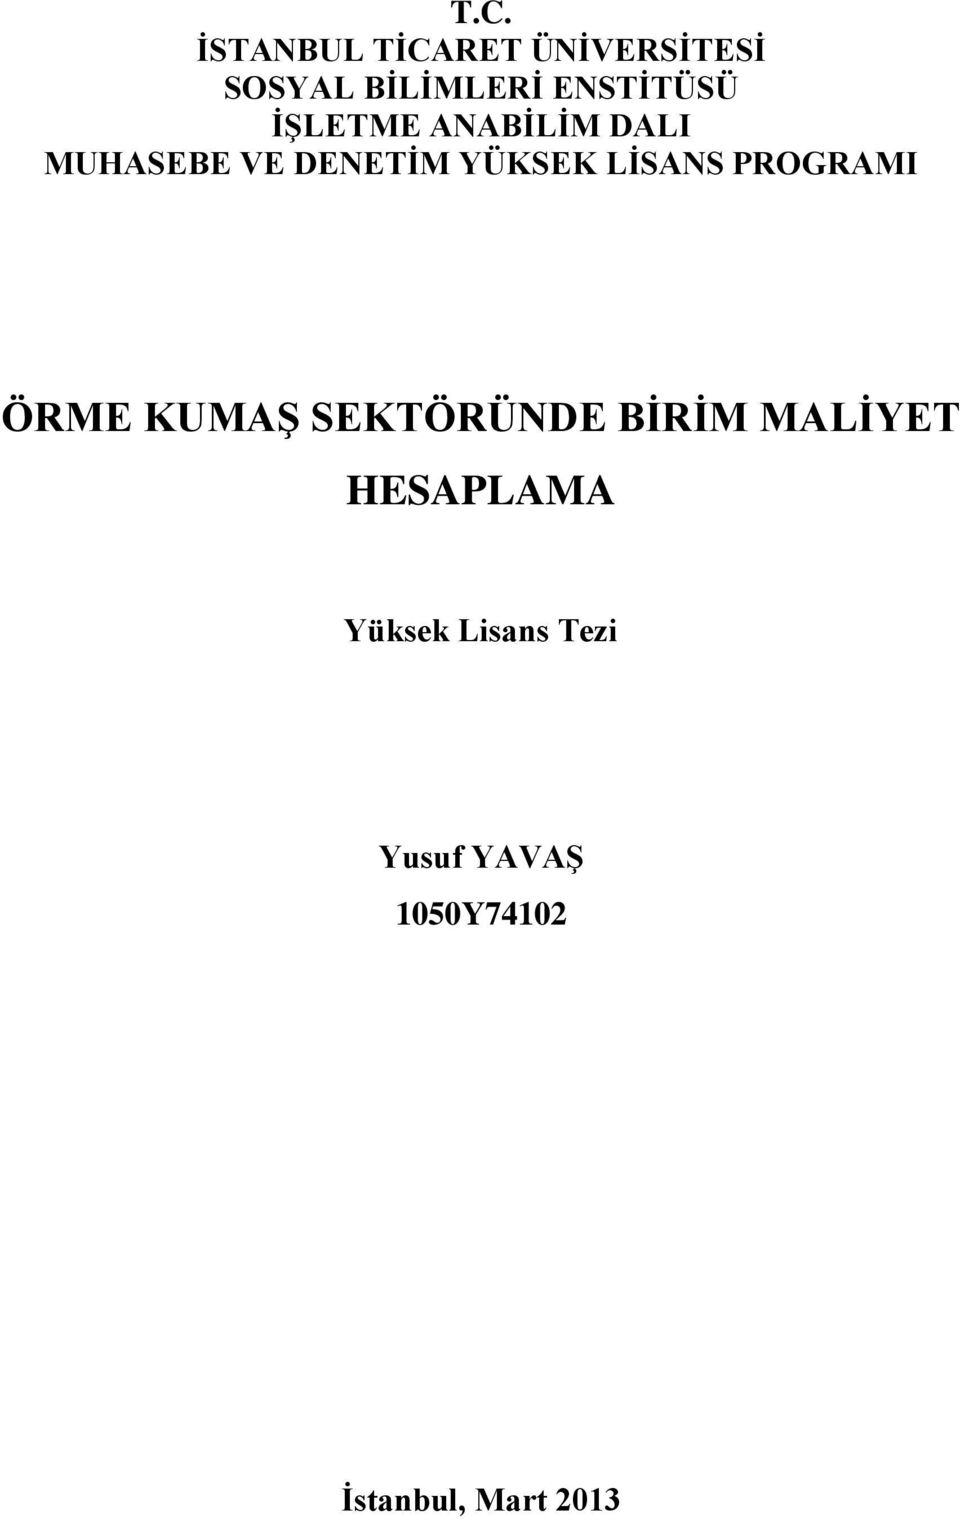 ÖRME KUMAŞ SEKTÖRÜNDE BİRİM MALİYET HESAPLAMA - PDF Free Download